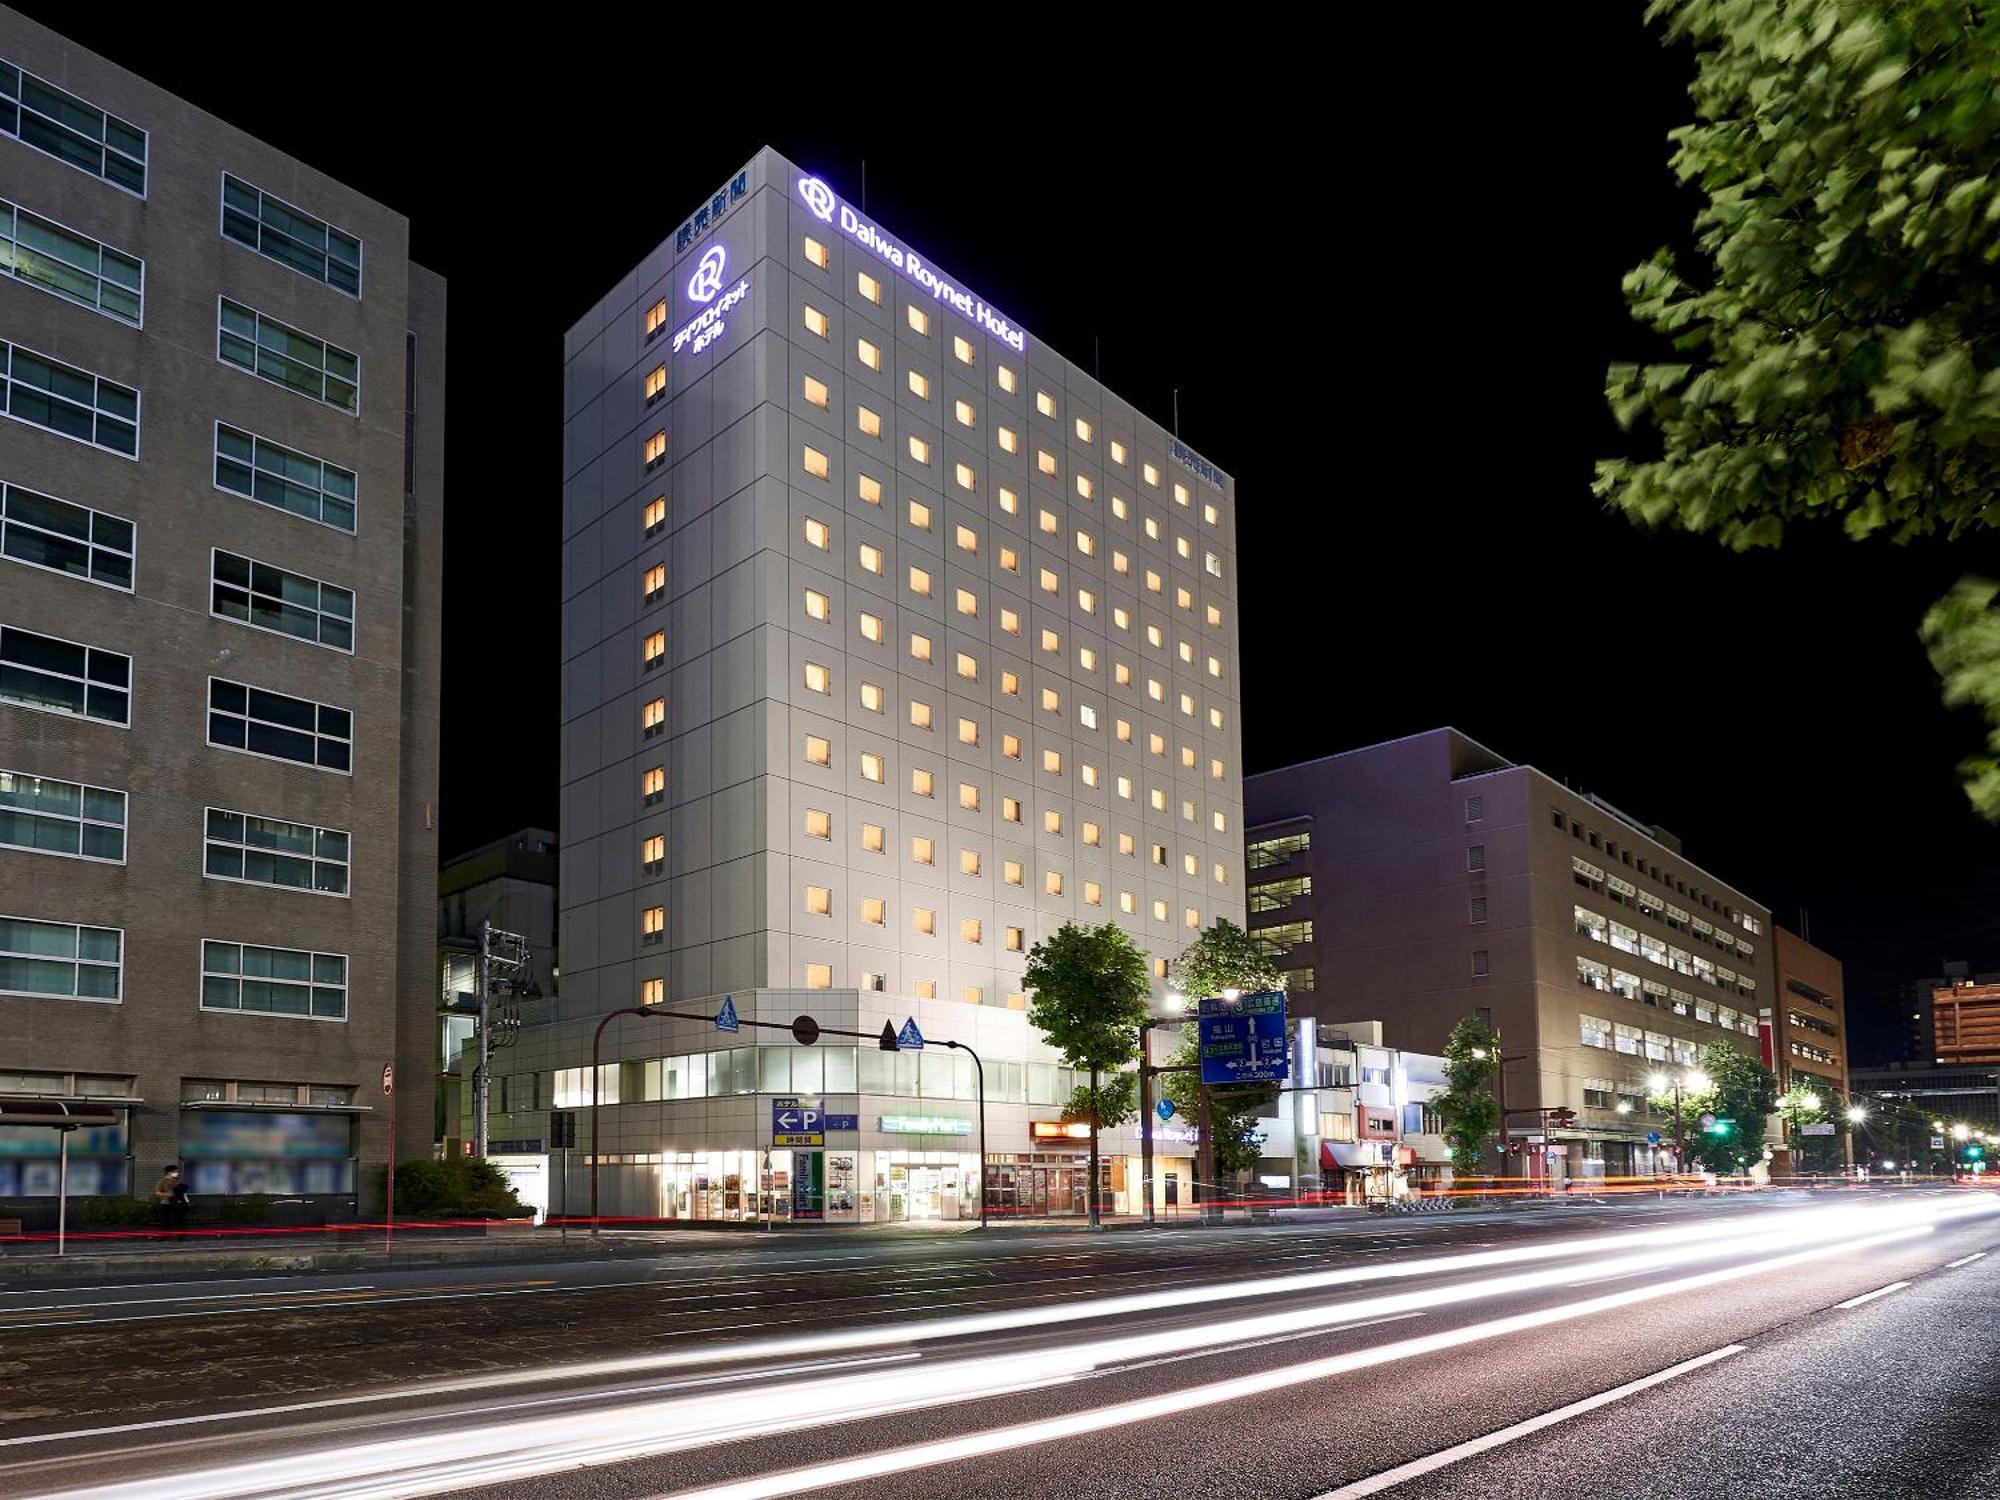 Daiwa Roynet Hotel Хиросима Экстерьер фото